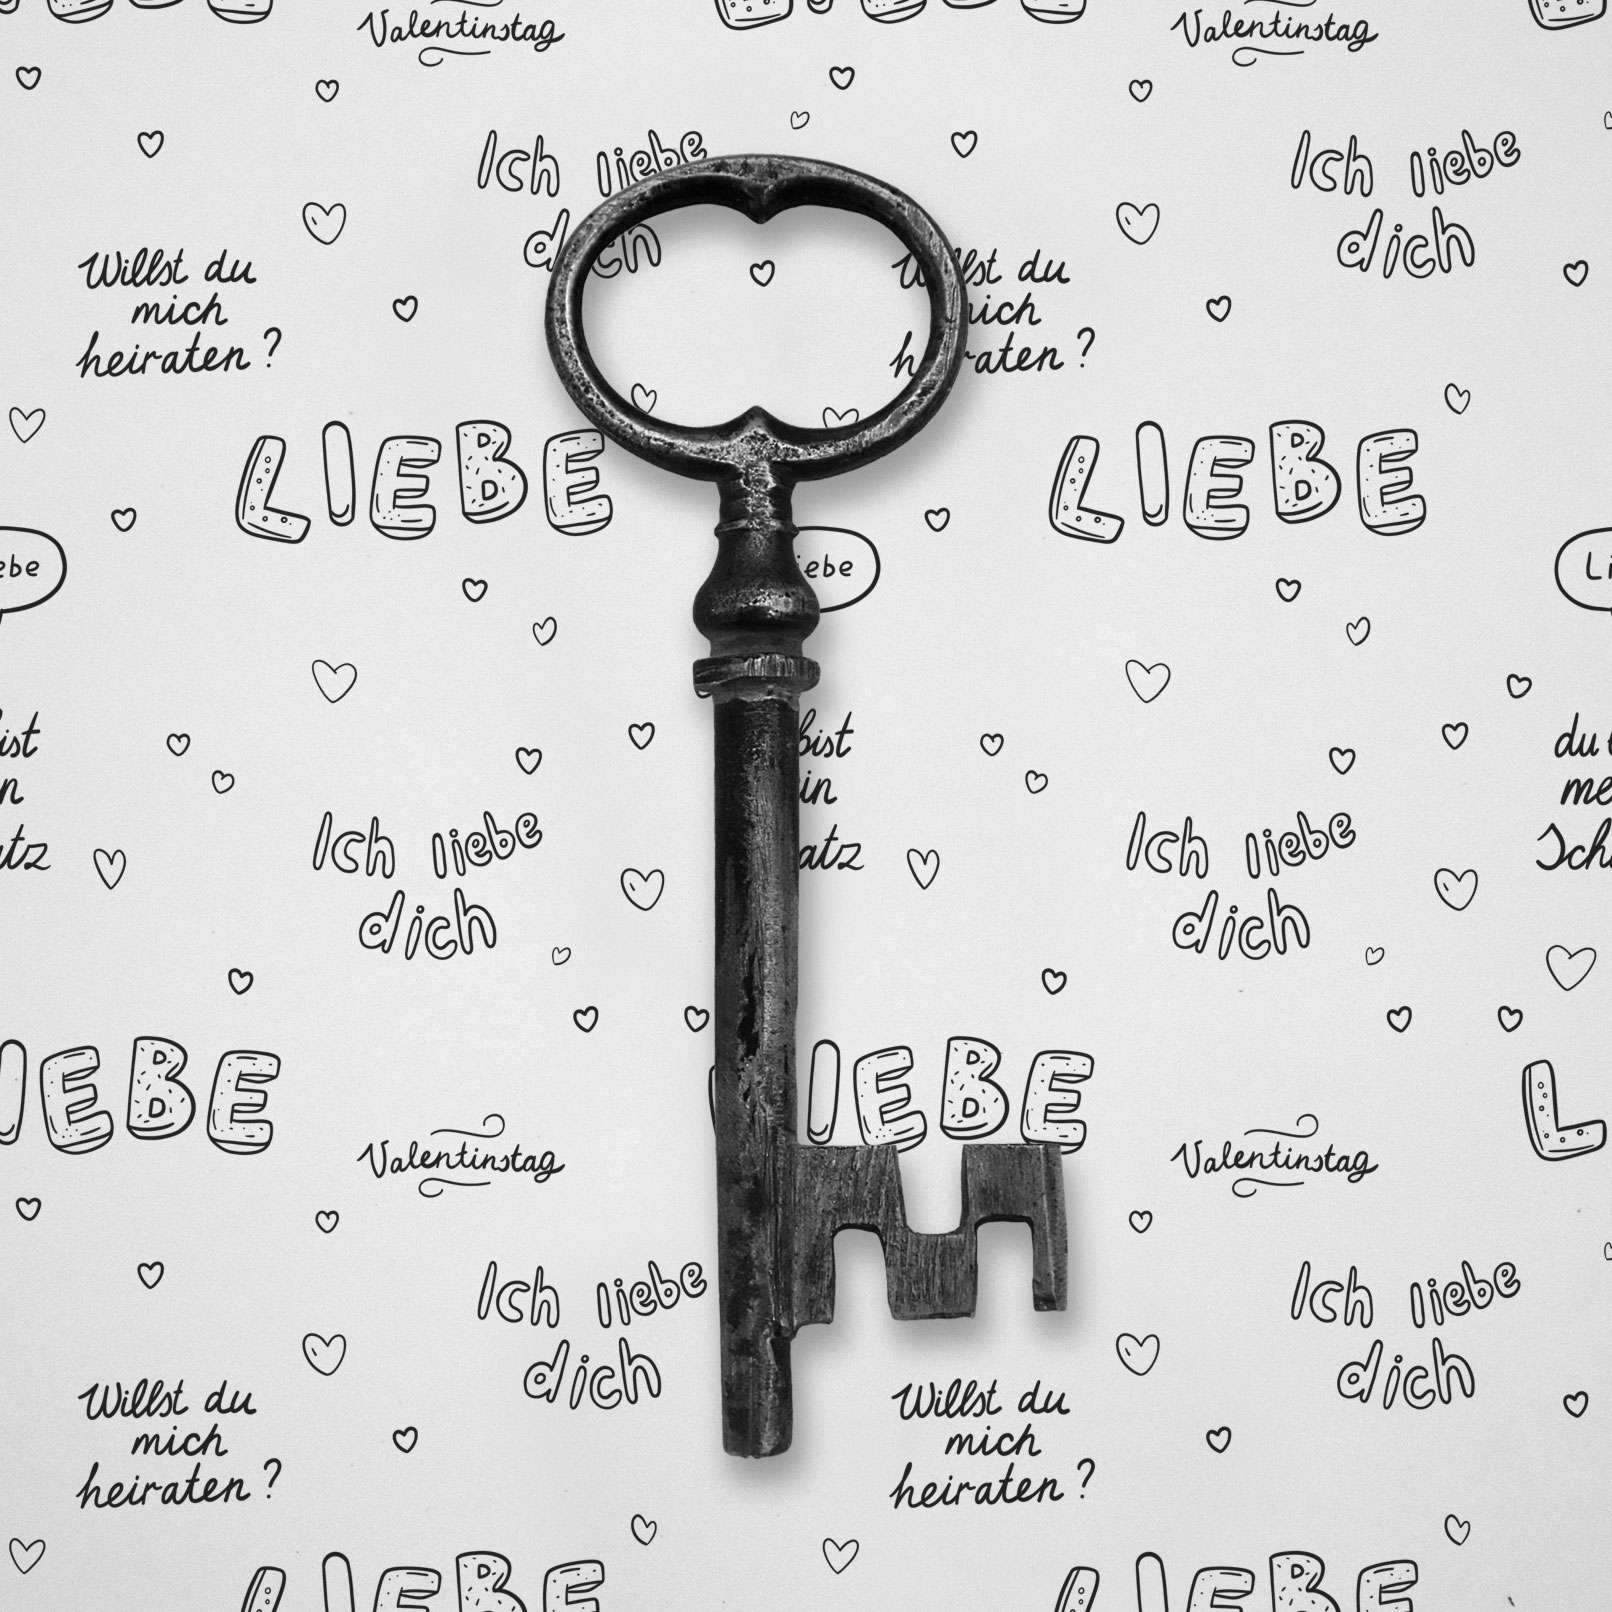 Bild eines Schlüssels mit einem Hintergrund aus Mustern für den Valentinstag